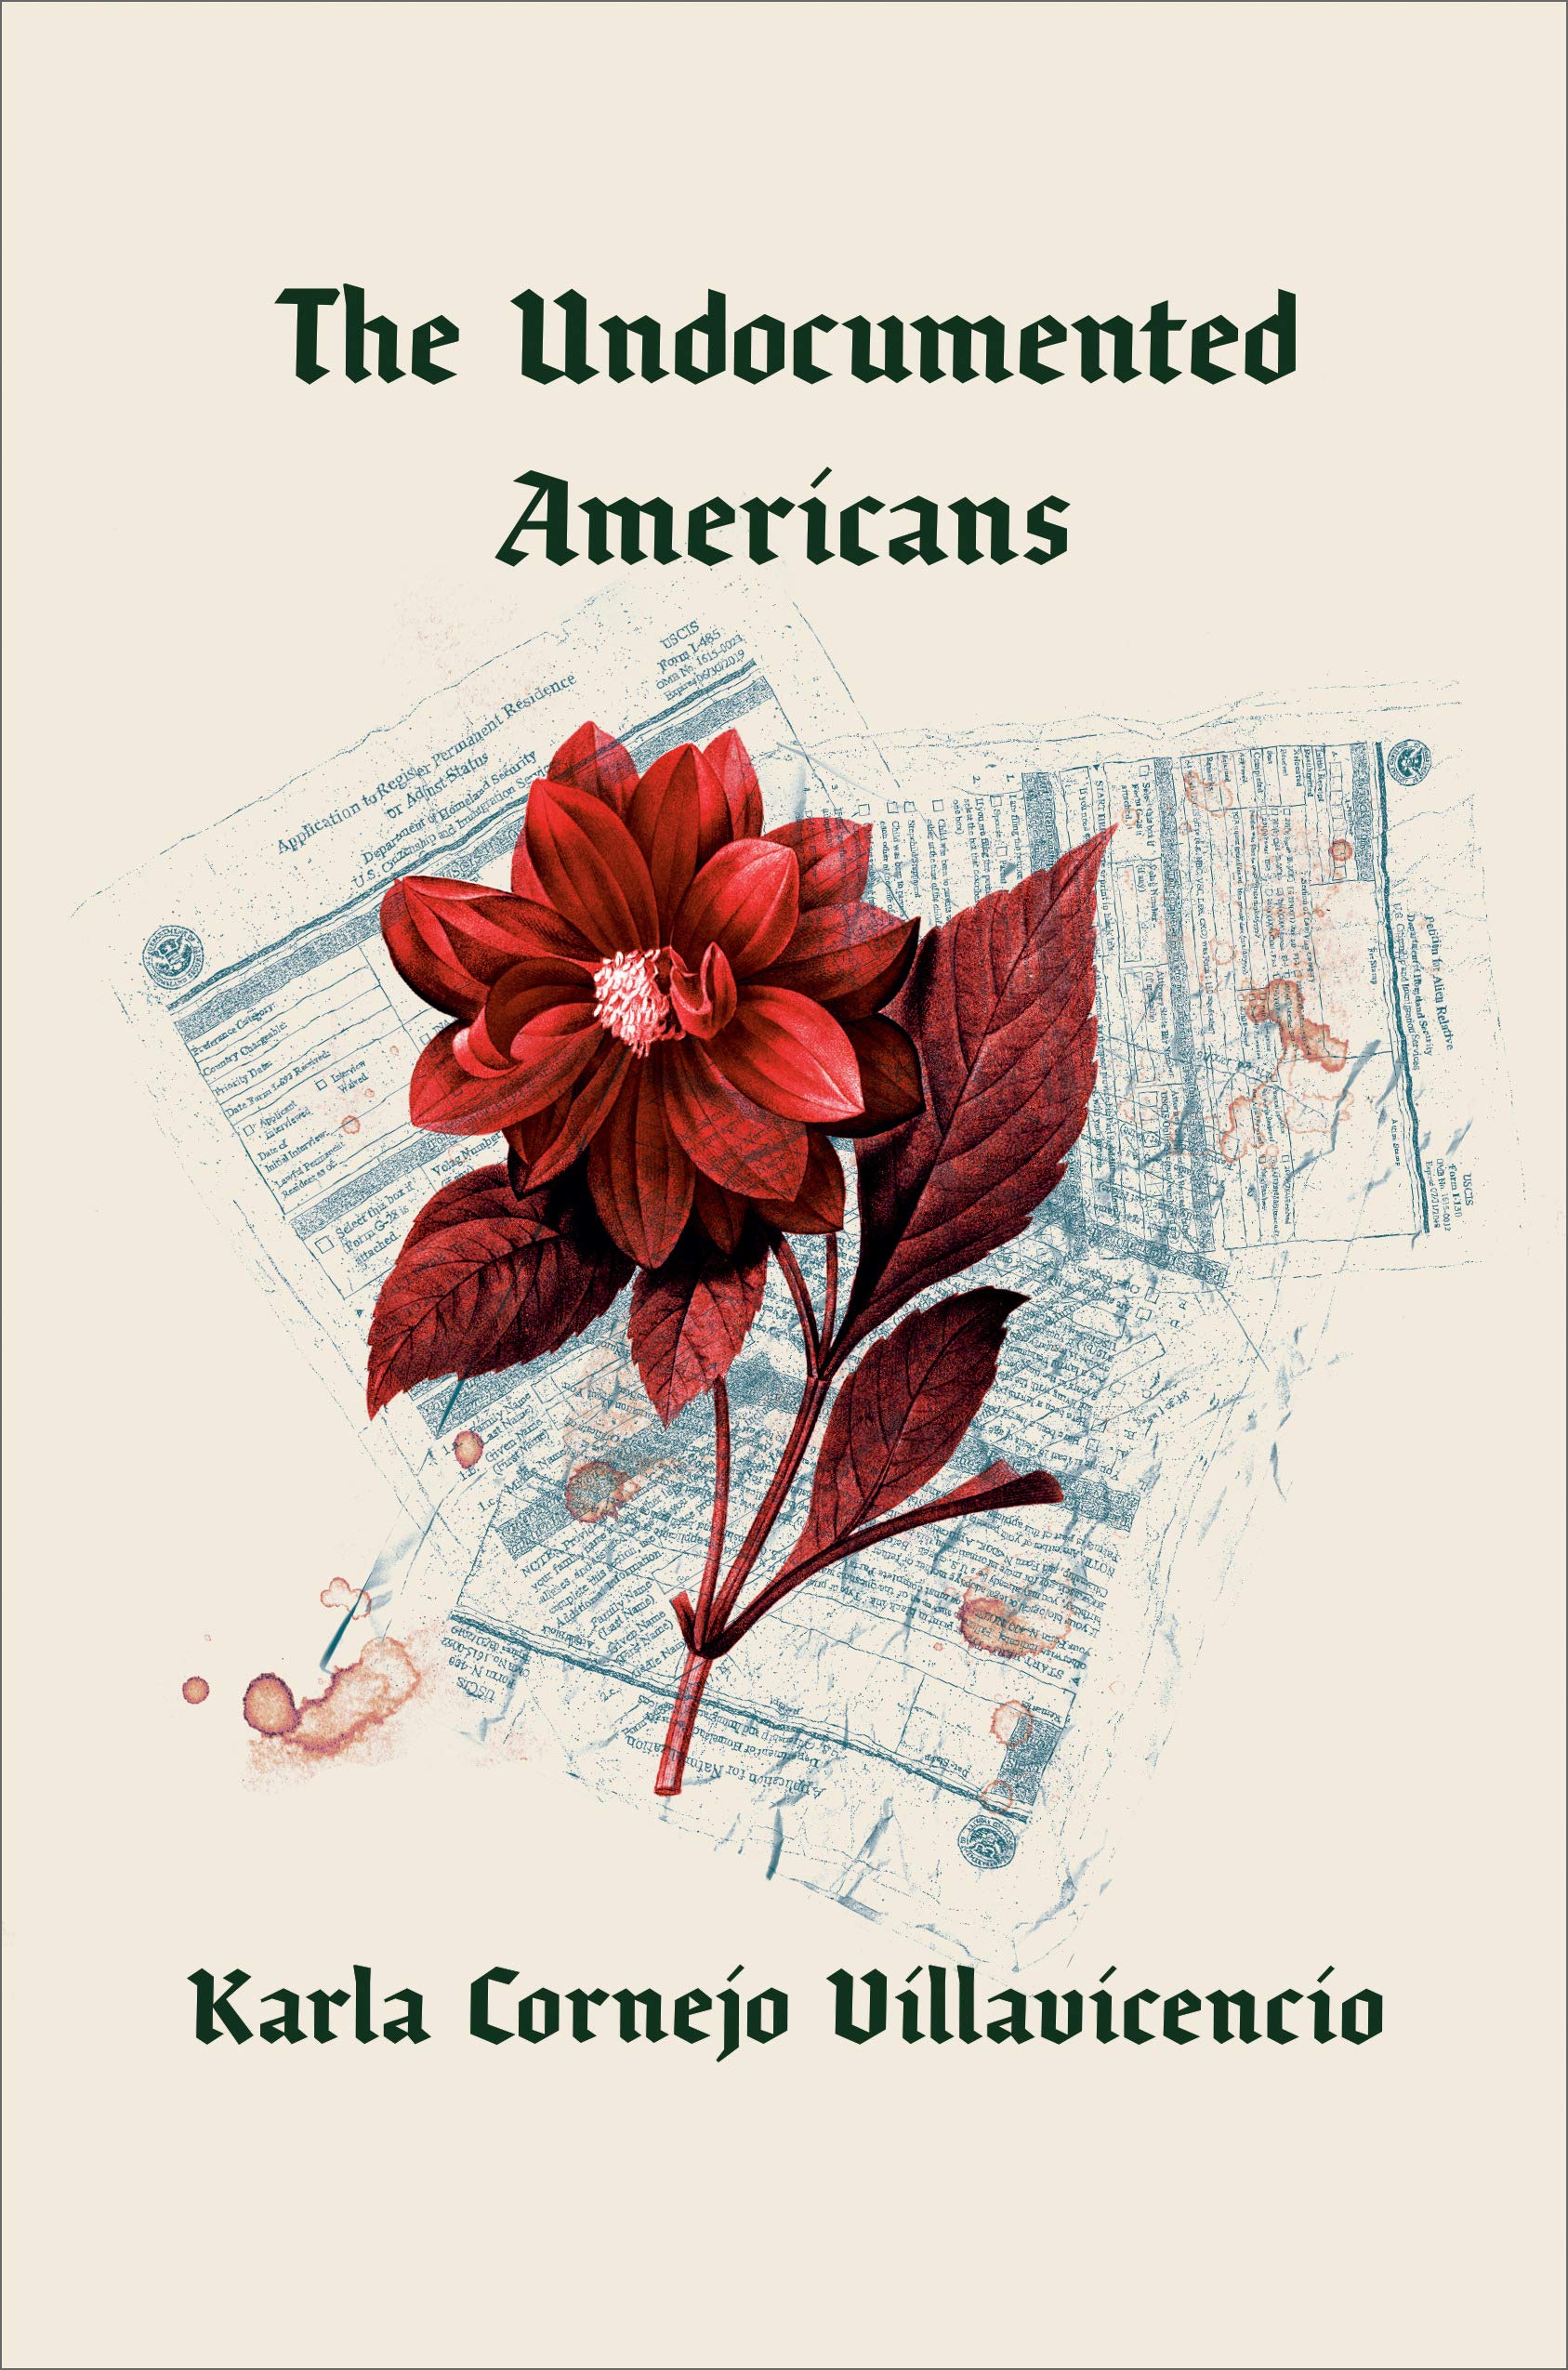 Book Cover: "The Undocumented Americans" by Karla Cornejo Villavicencio